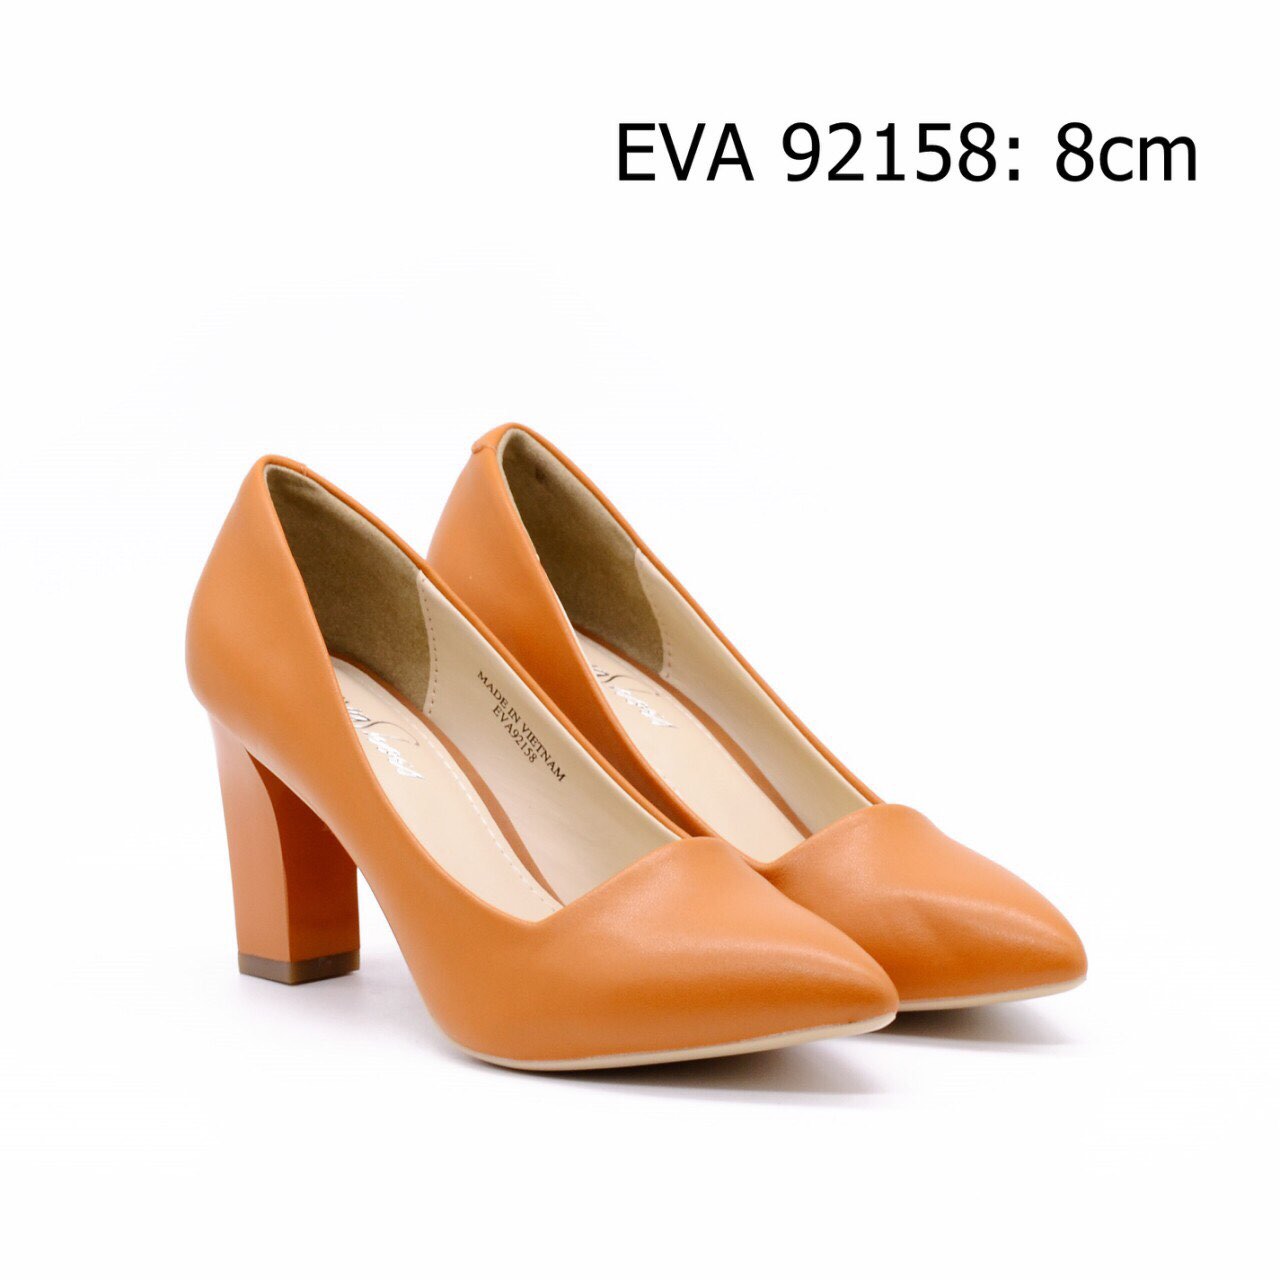 Giầy cao gót nữ EVA92158 thiết kế đơn giản tạo nét đẹp dịu dàng, nền nã cho bạn gái.